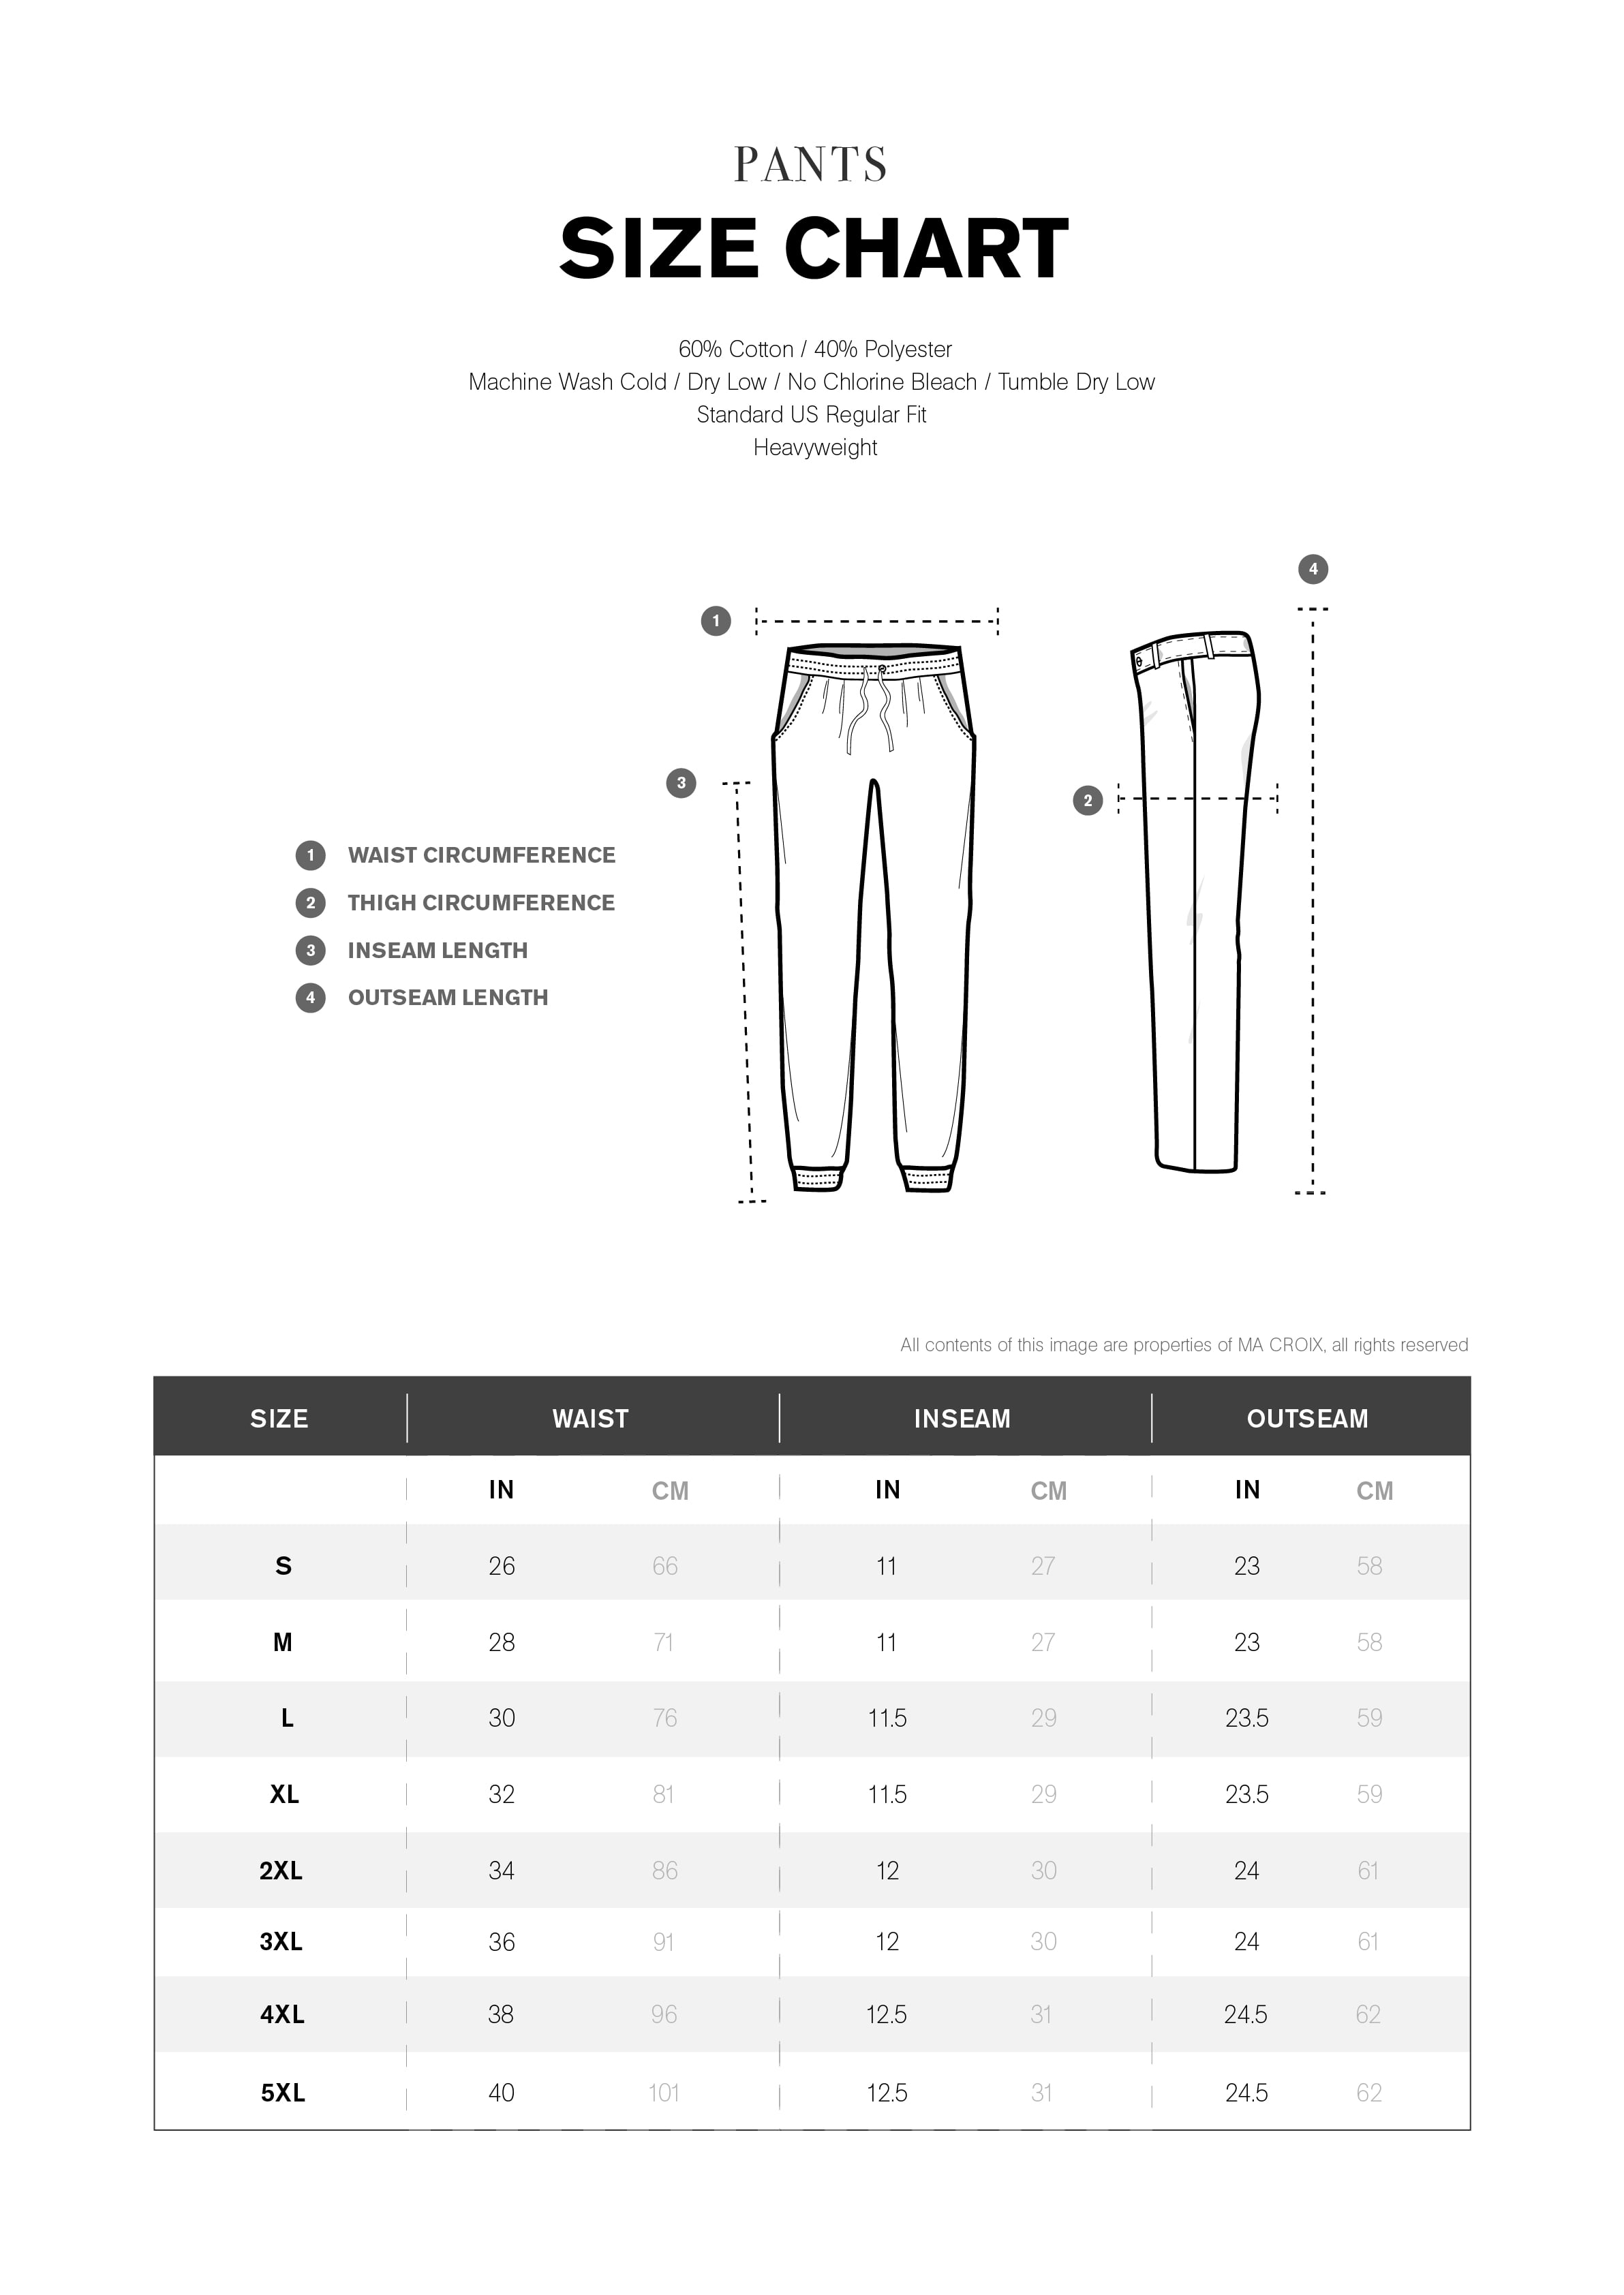 Fleece Cargo Pants 2XL - 5XL – Pro 5 USA